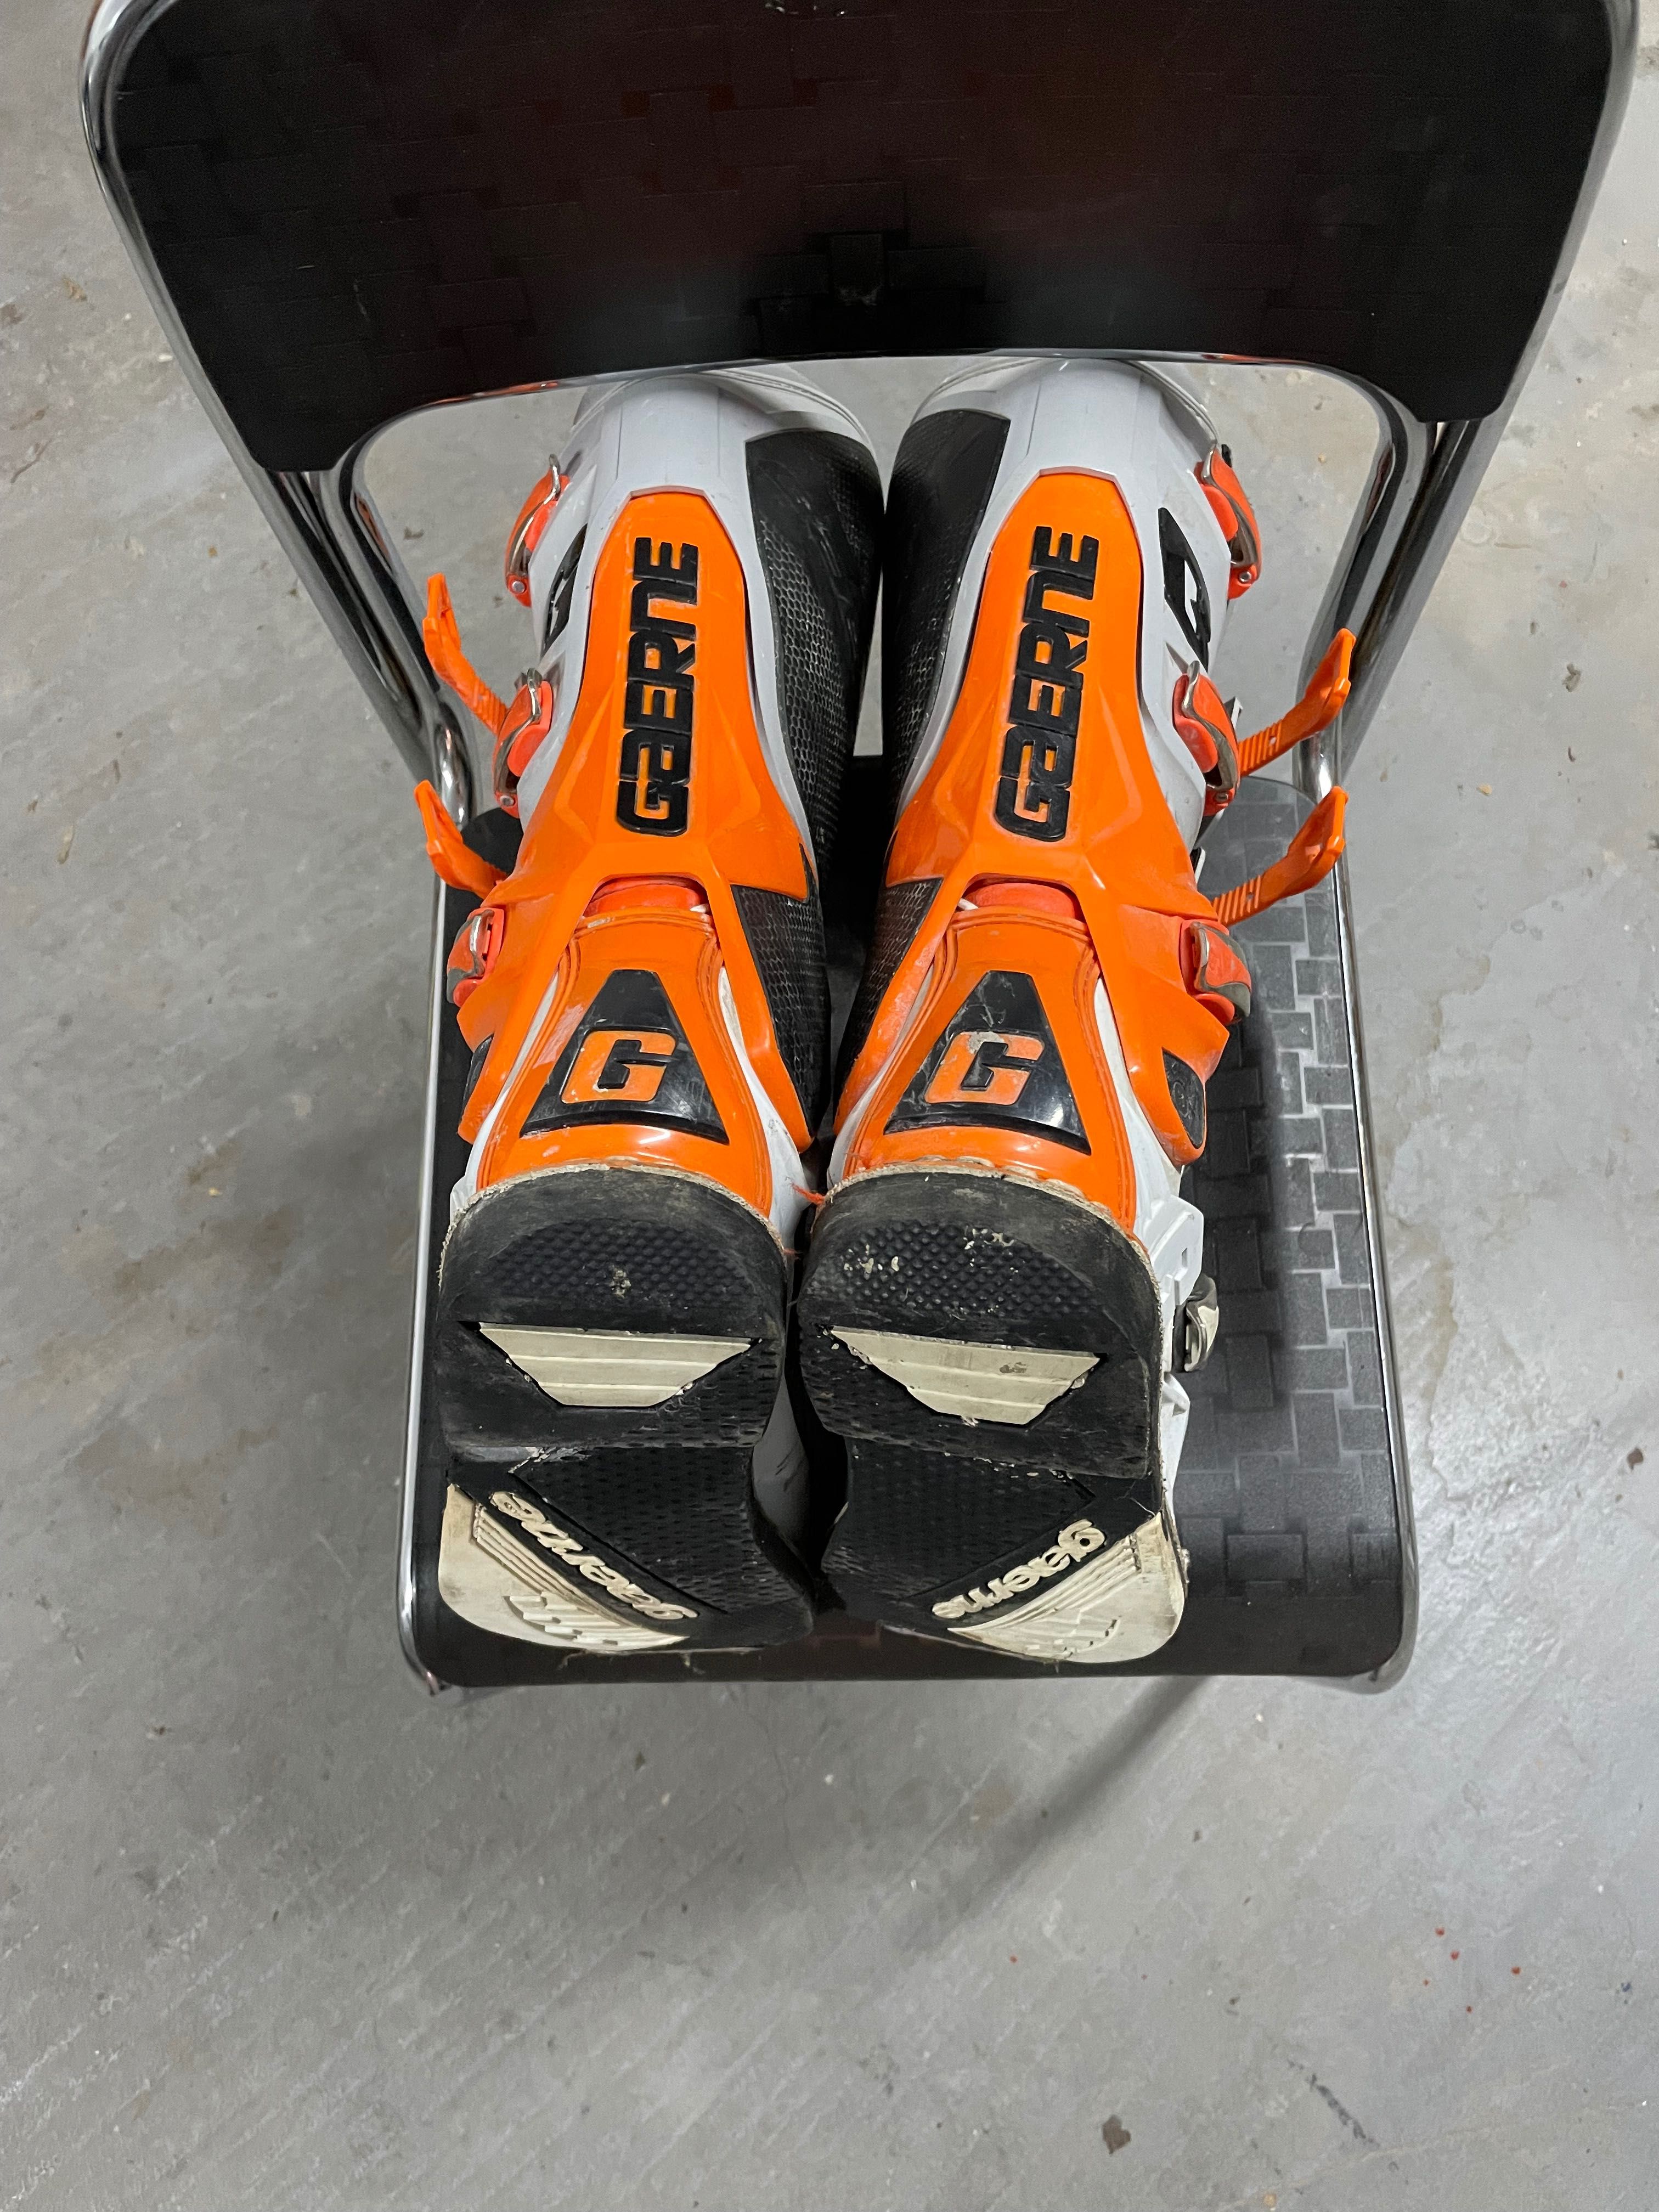 buty cross Gaerne sg12 pomarańczowo-biało-szare